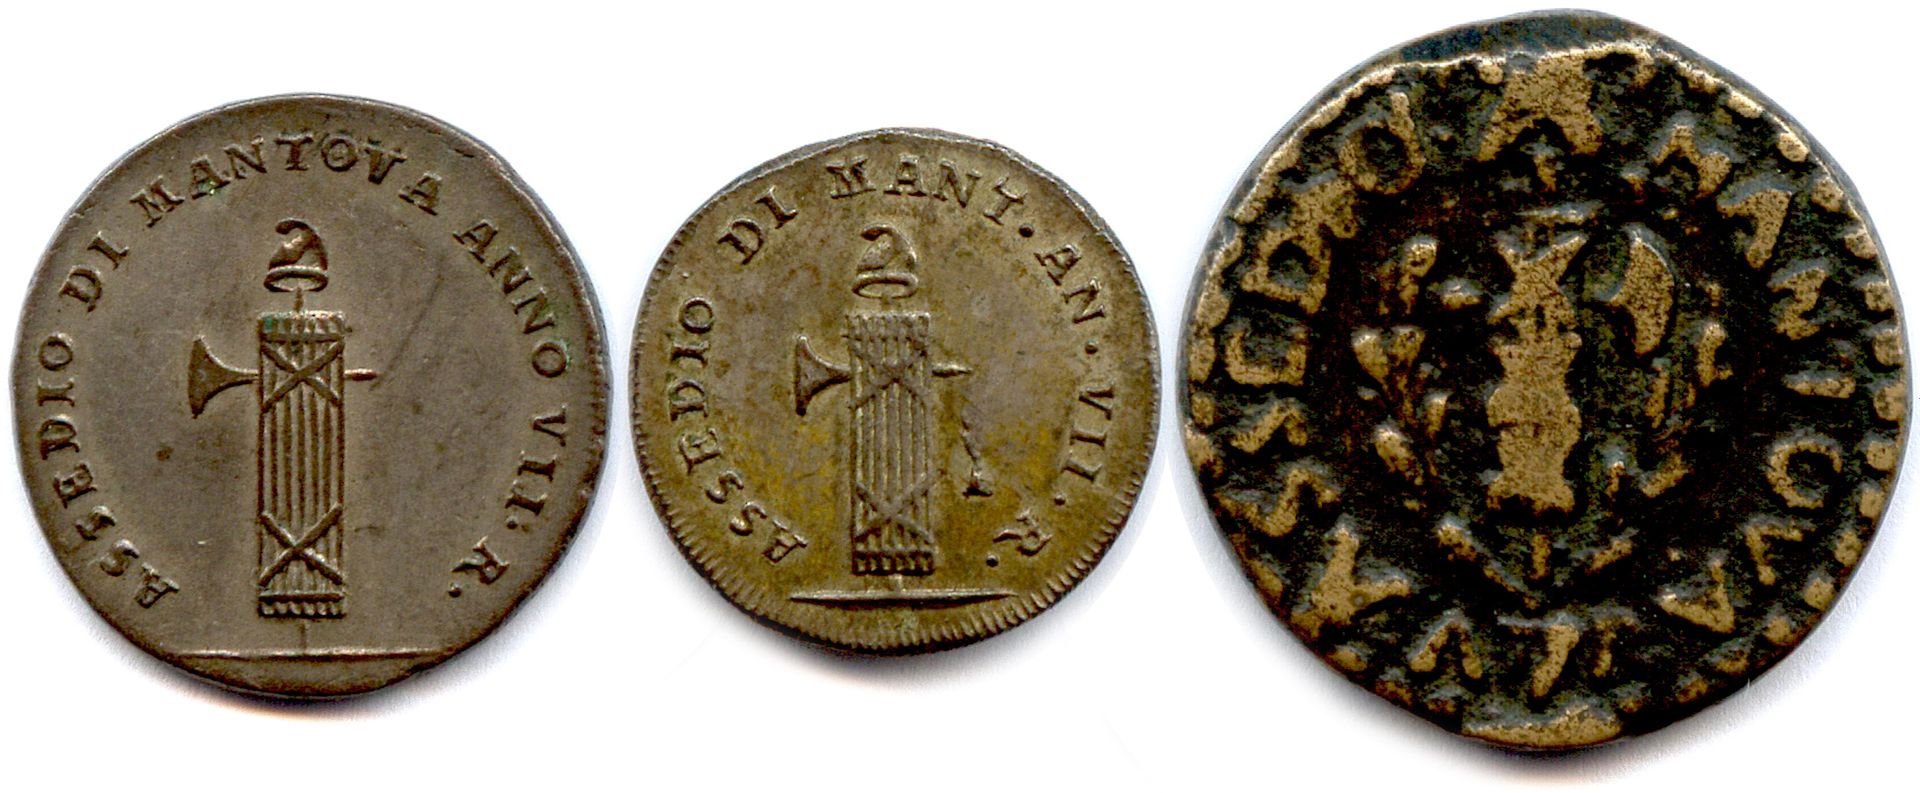 Null Assedio di MANTOUE da parte degli austriaci Resa 30 luglio 1799

Tre monete&hellip;